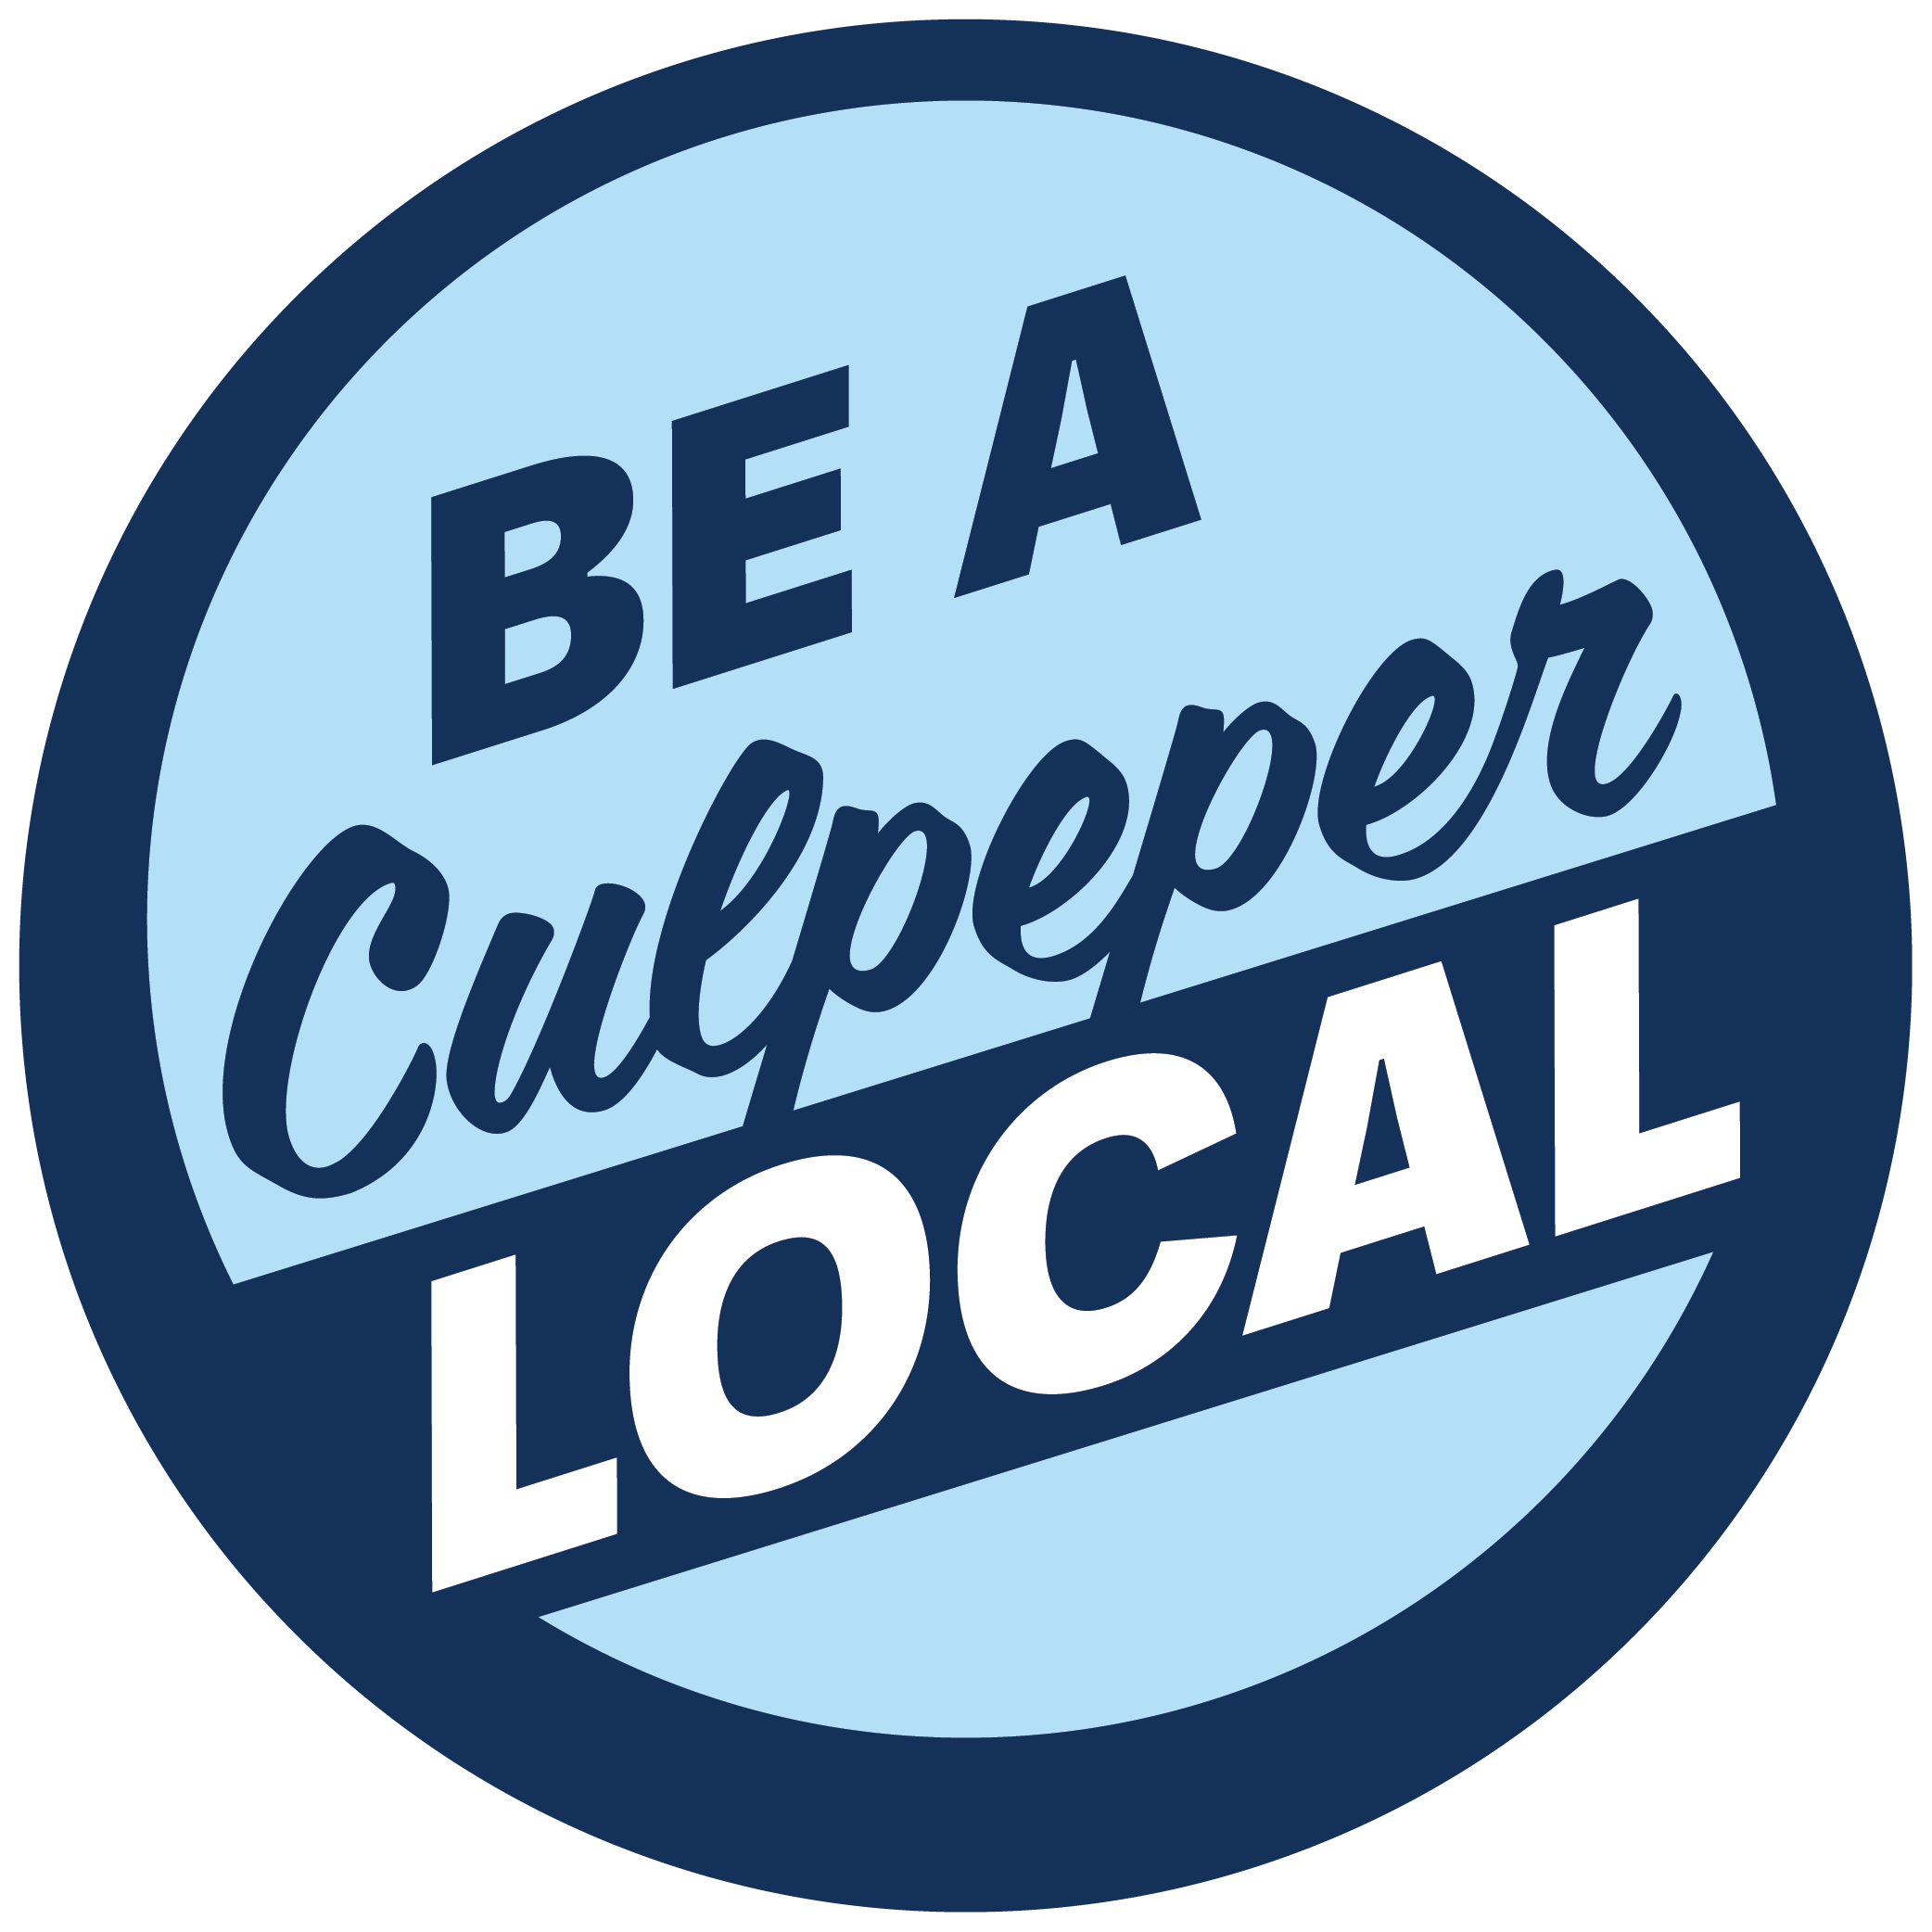 Be A Culpeper Local Logo